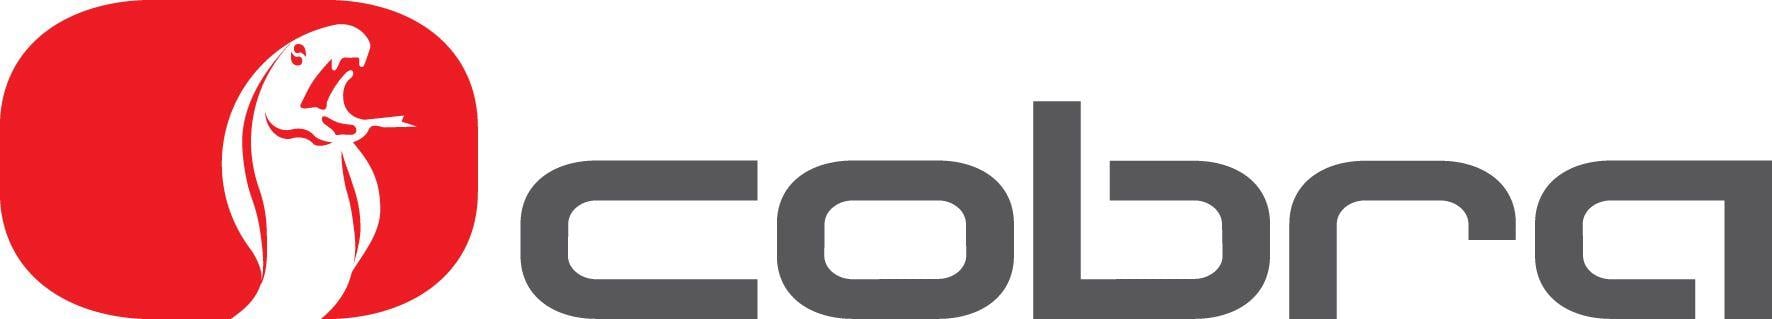 Cobra Insurance Logo - Cobra Trackers Now Avaliable. Tony Gilham Limited